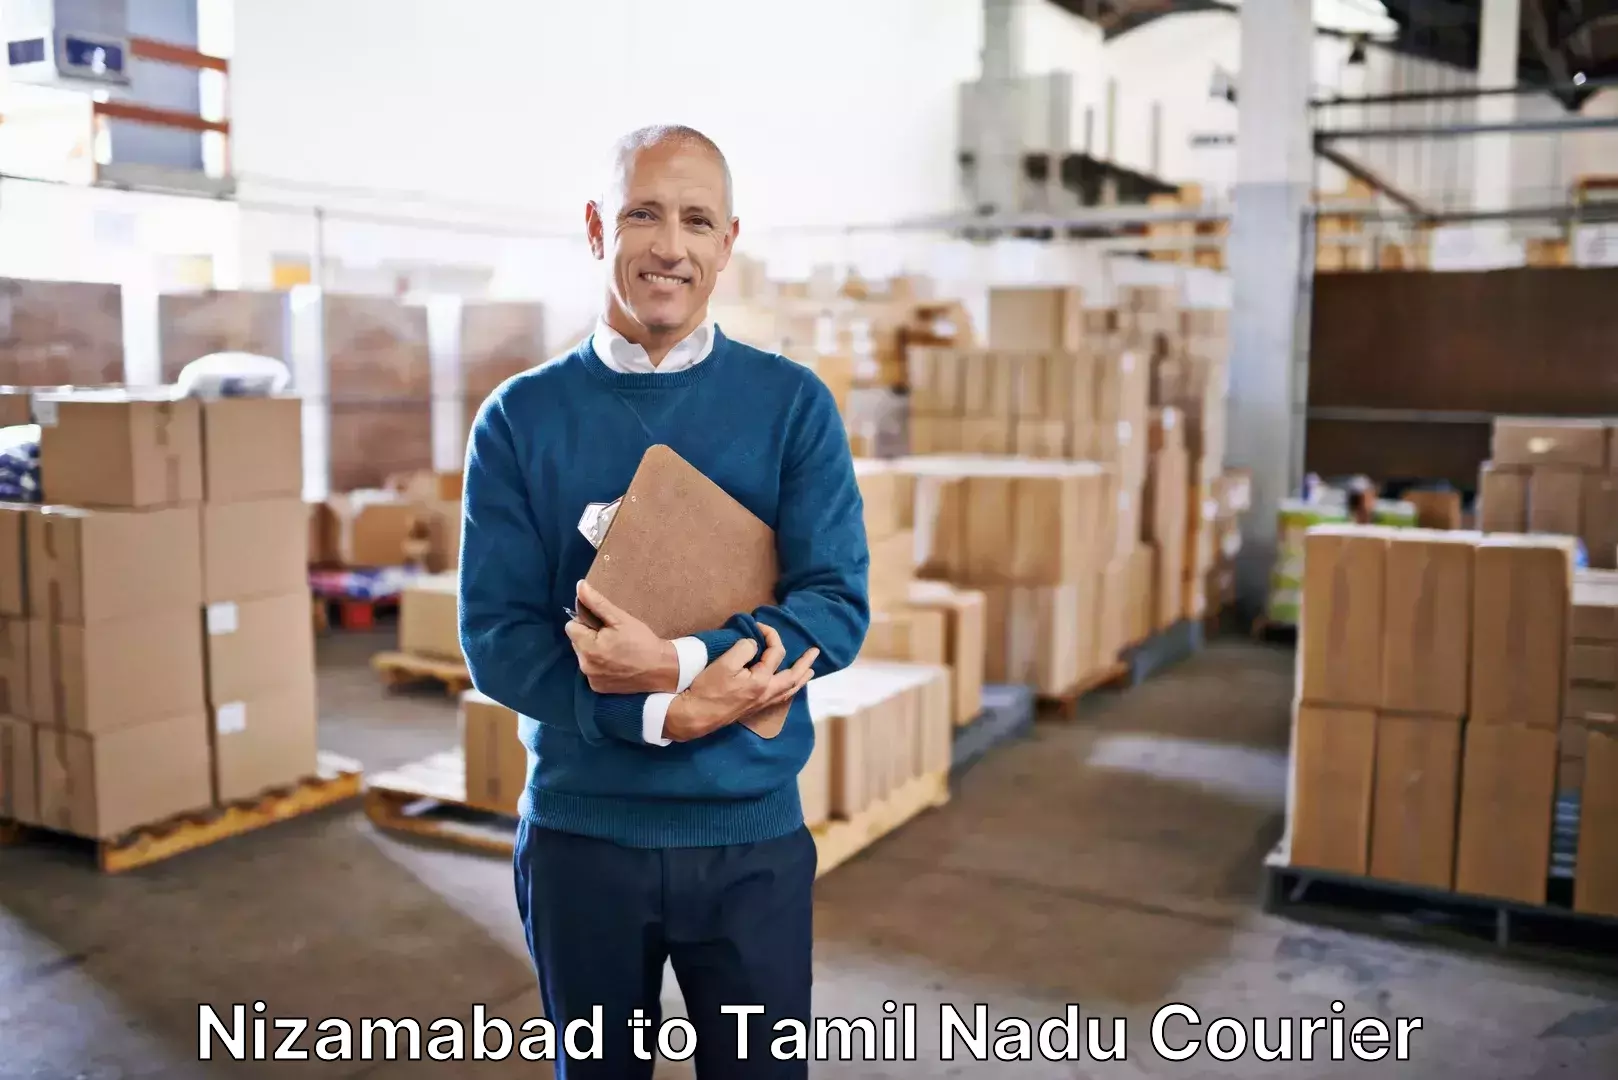 Urgent luggage shipment Nizamabad to Chennai